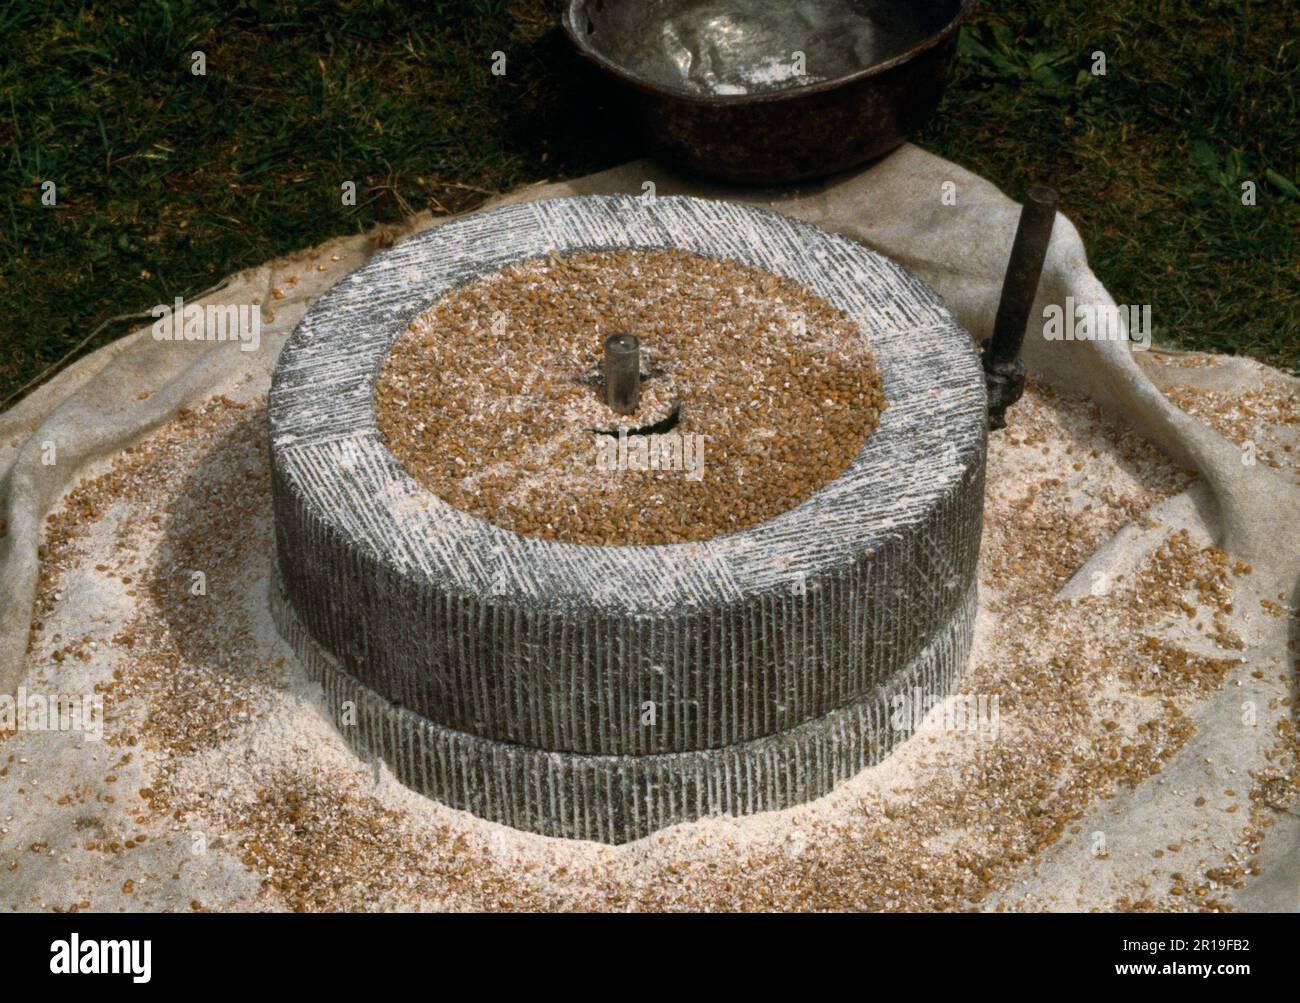 Eine Reproduktion der römischen Rotationsquern (Handmühle) in einer Ausstellung der Ermine Street Guard im Loggerheads Country Park, Denbighshire, Wales, Großbritannien. Stockfoto